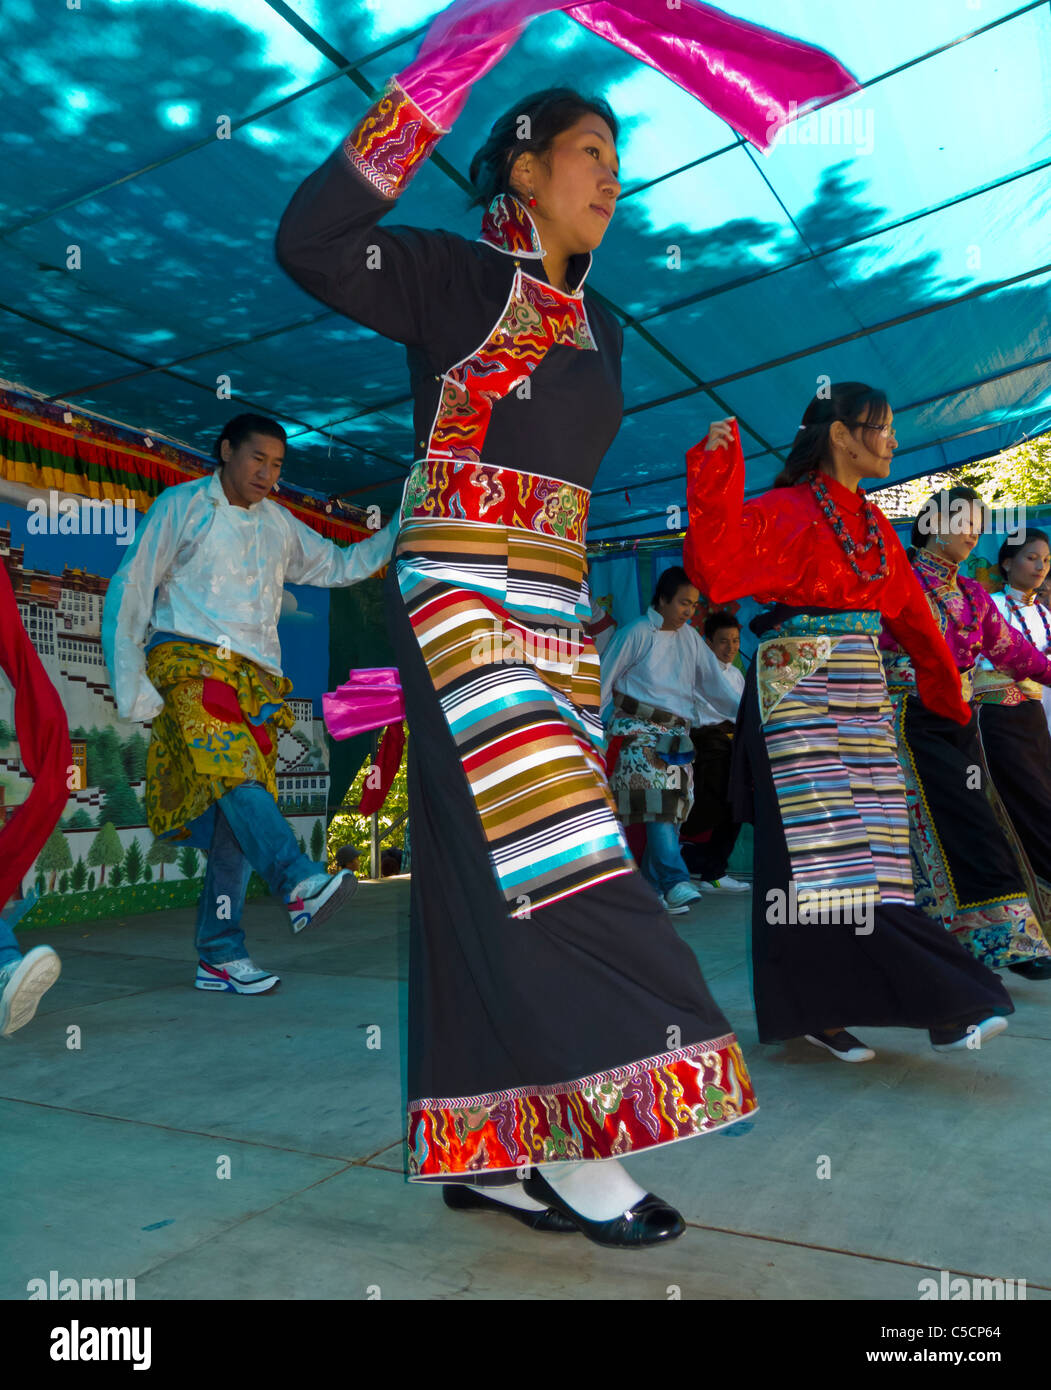 París, Fra-nce, tibetanos en traje tradicional, baile en el festival budista, celebración del cumpleaños de Dalai Lama, "Kagyu Dzong" celebrando diferentes culturas Foto de stock